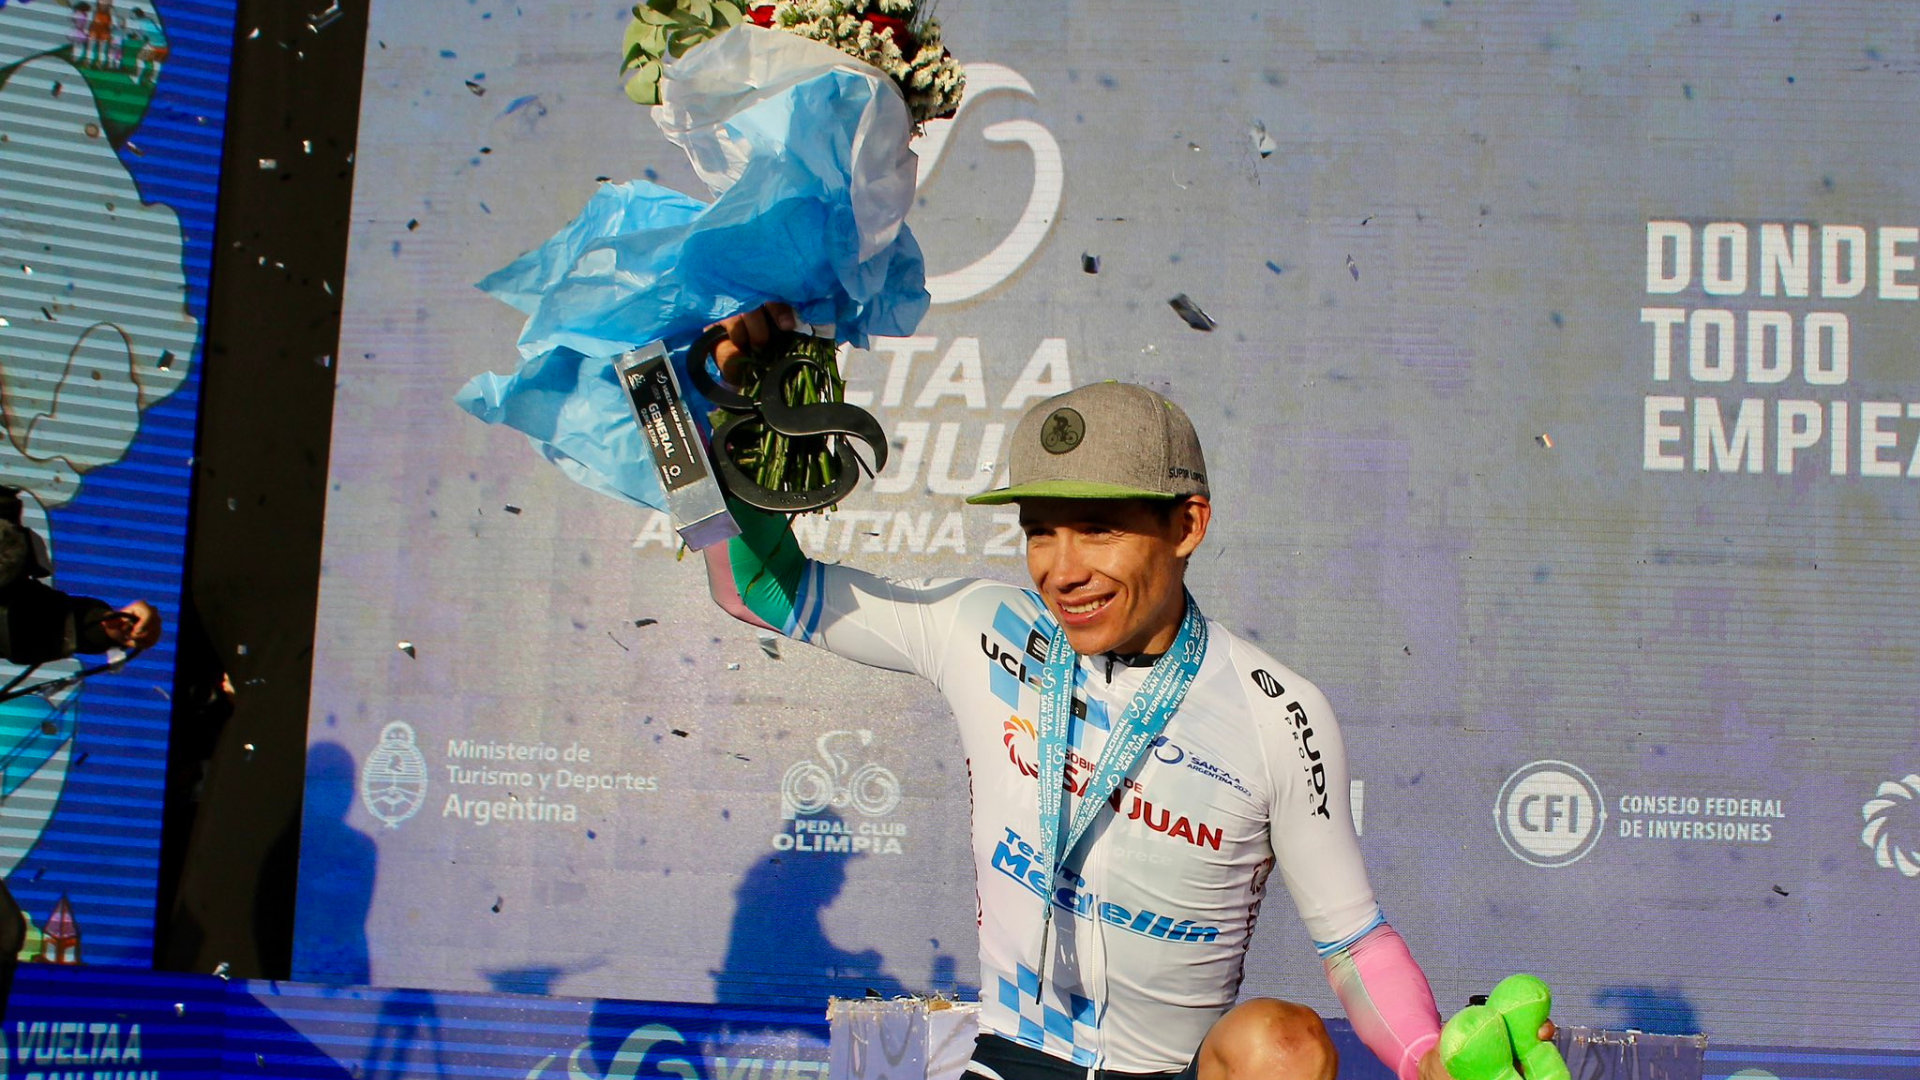 Miguel Ángel López tras su triunfo en la Vuelta a San Juan: “Cuando todo parecía perdido llegó el título” 